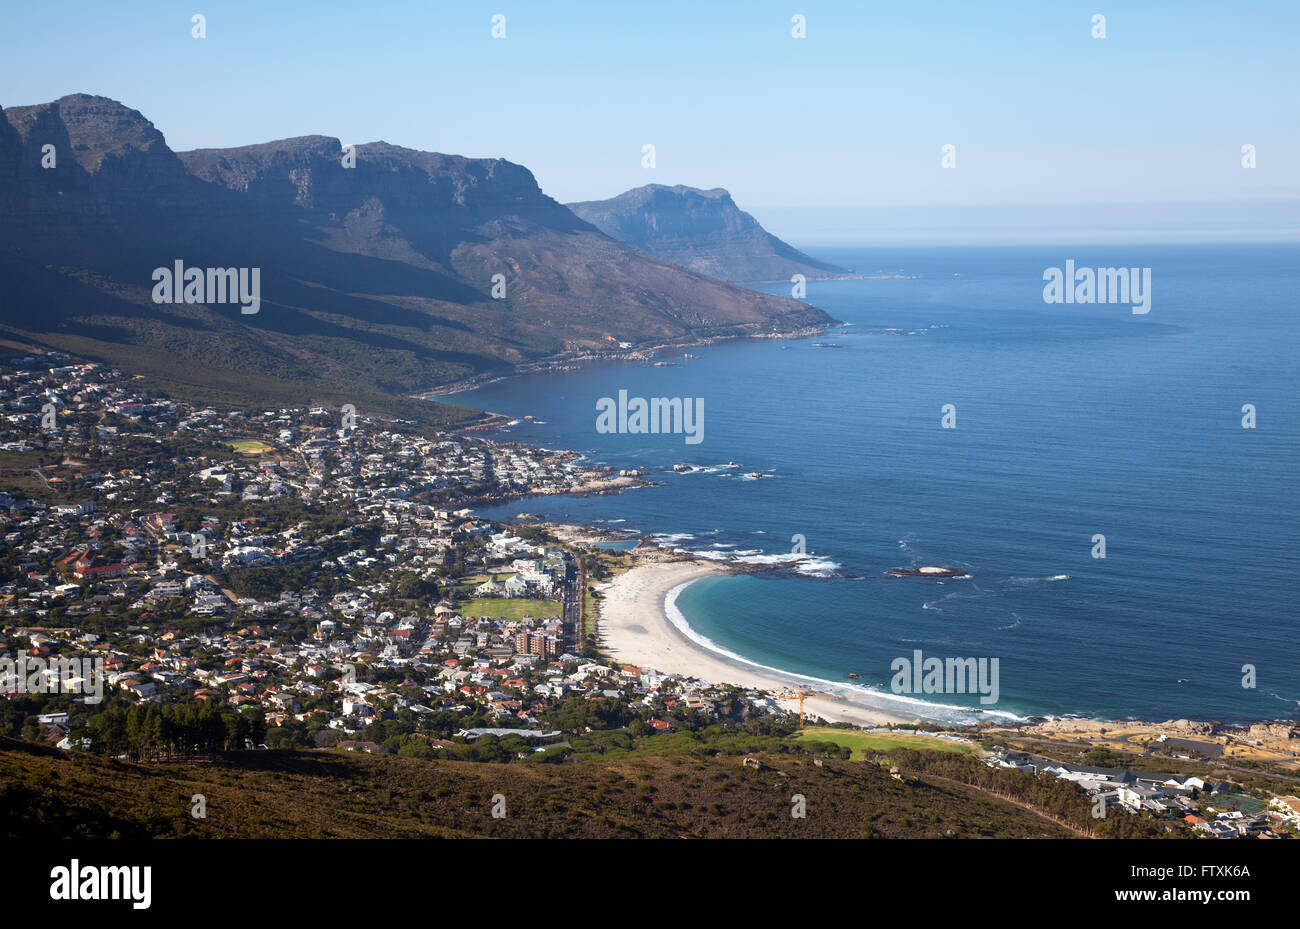 Camps Bay gegen zwölf Apostel gesehen vom Lions Head am frühen Morgen - Cape Town - Südafrika Stockfoto